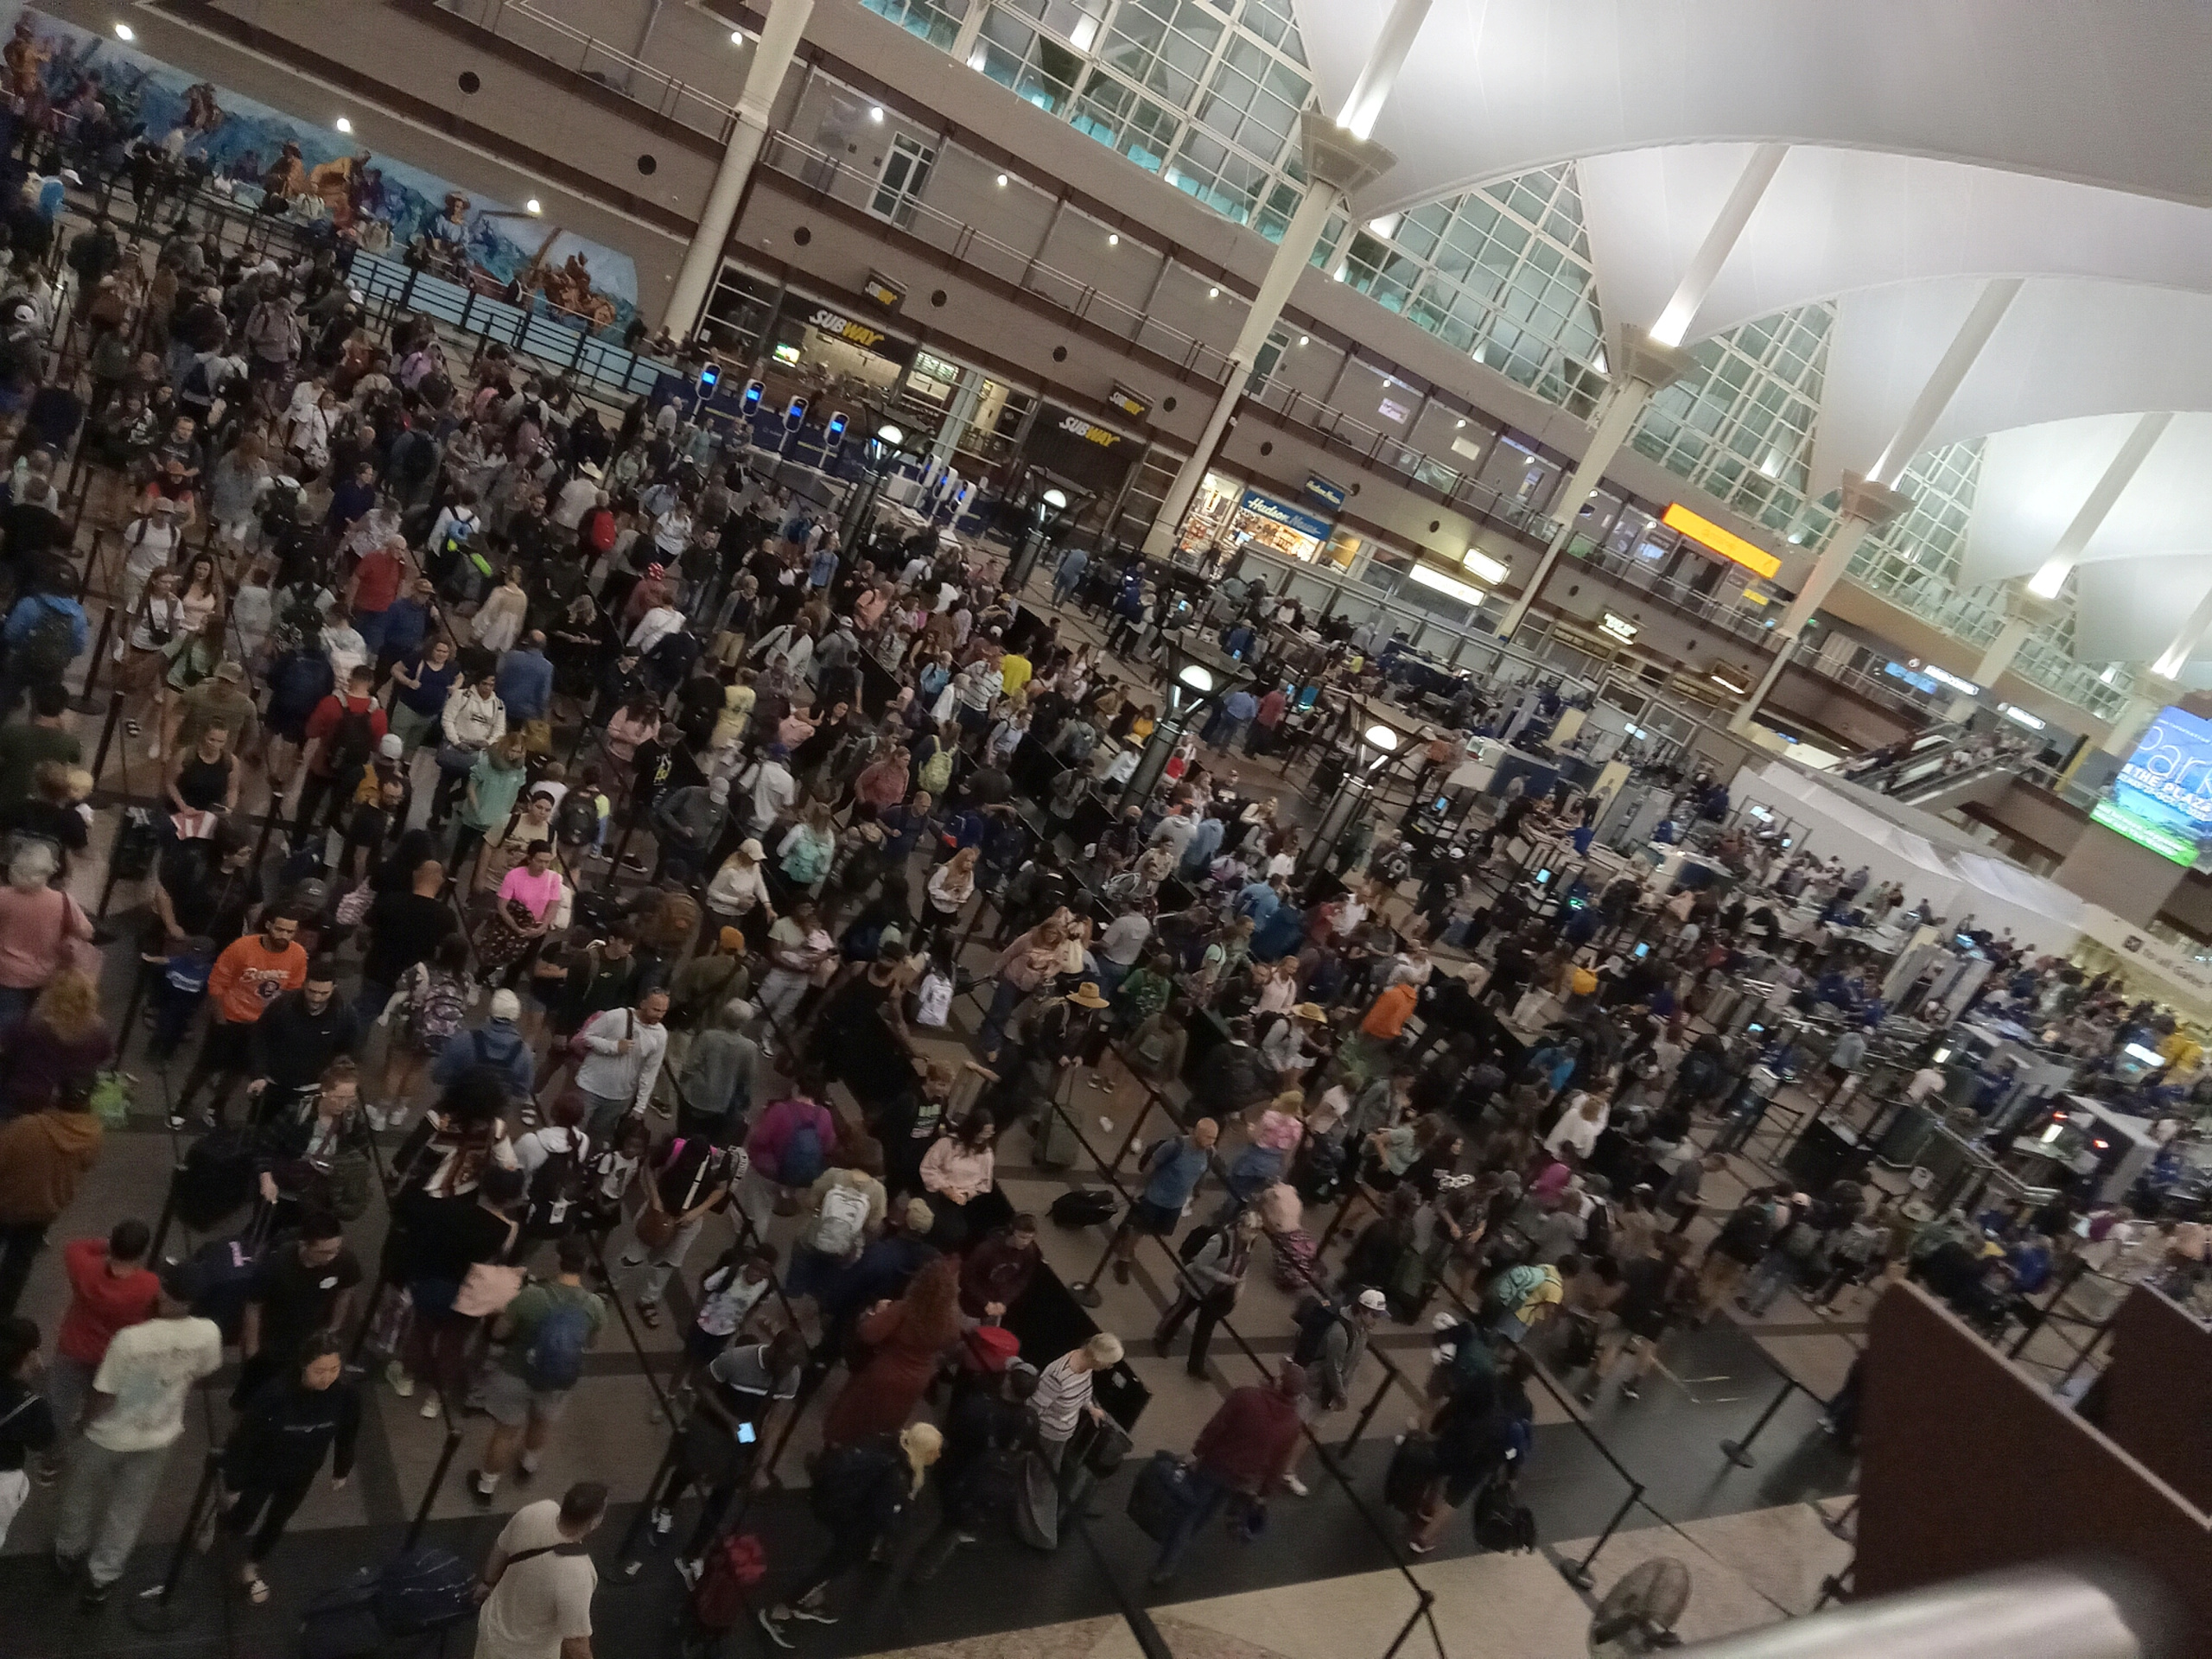 Denver International Airport security check line.